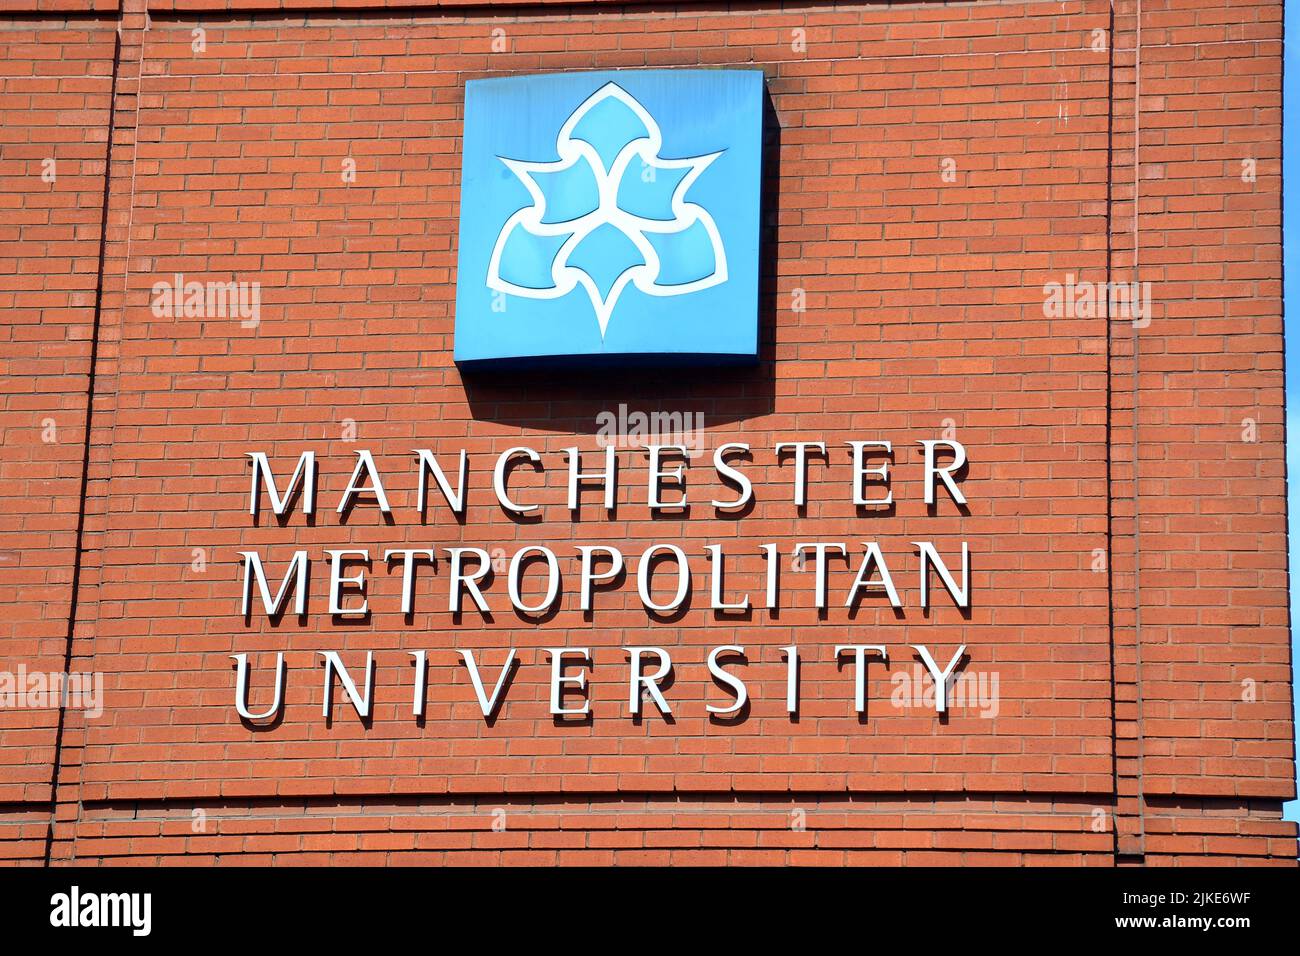 Un panneau sur l'un des bâtiments de l'Université métropolitaine de Manchester, Oxford Road, Manchester, Angleterre, Royaume-Uni. Banque D'Images